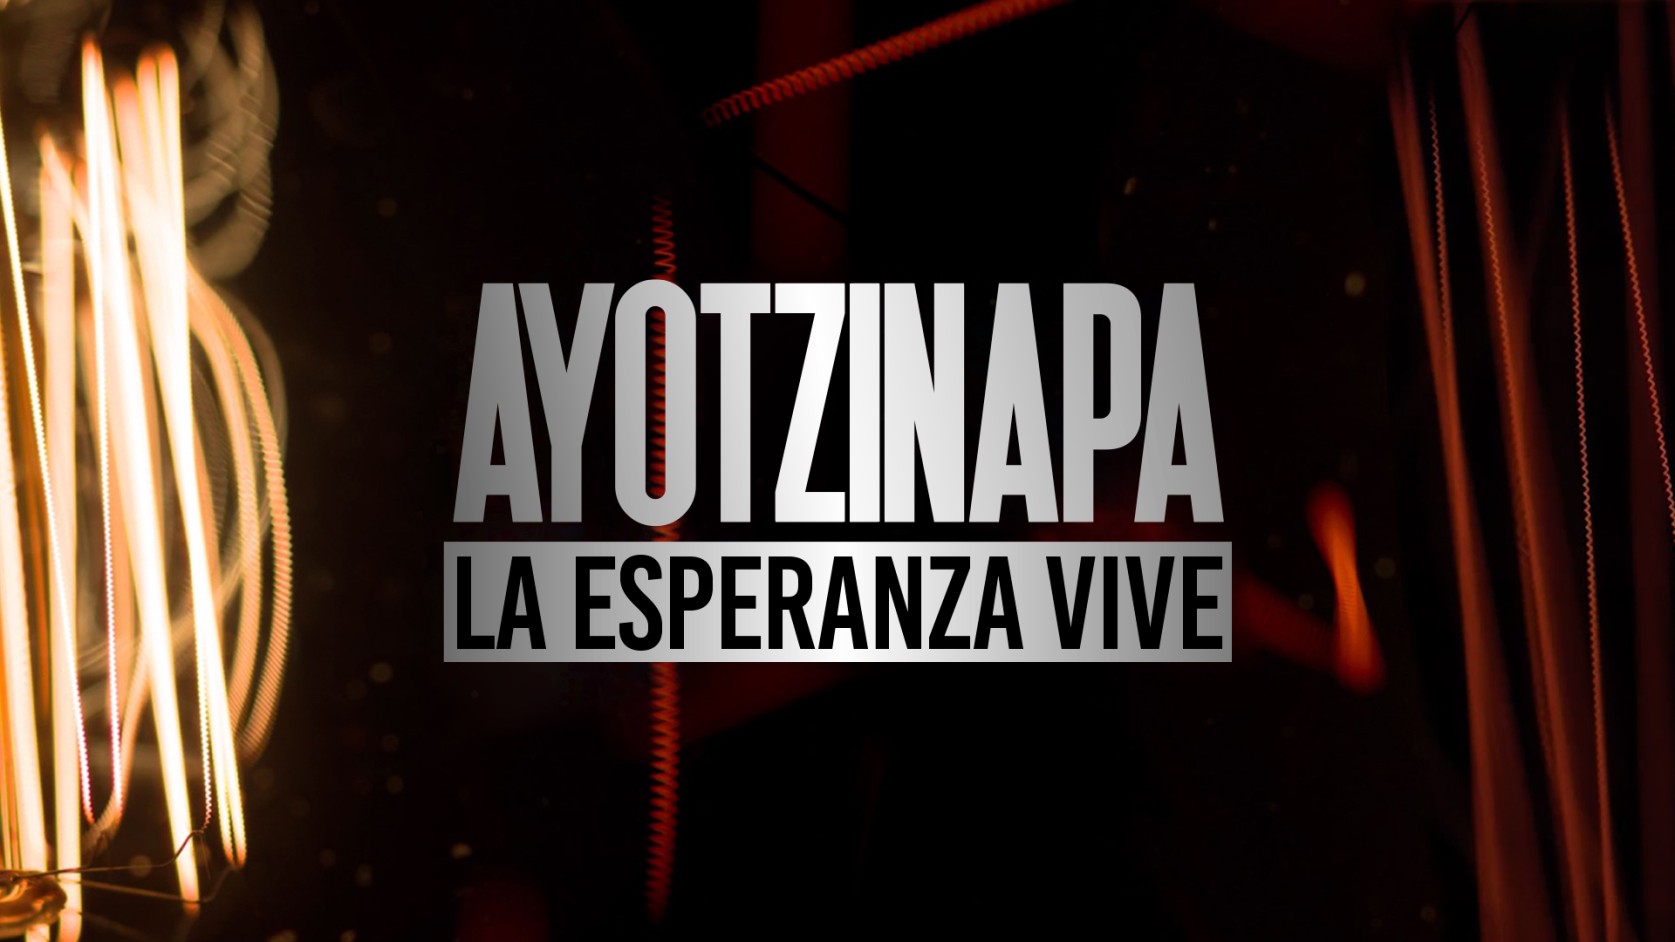 Ayotzinapa, la esperanza vive